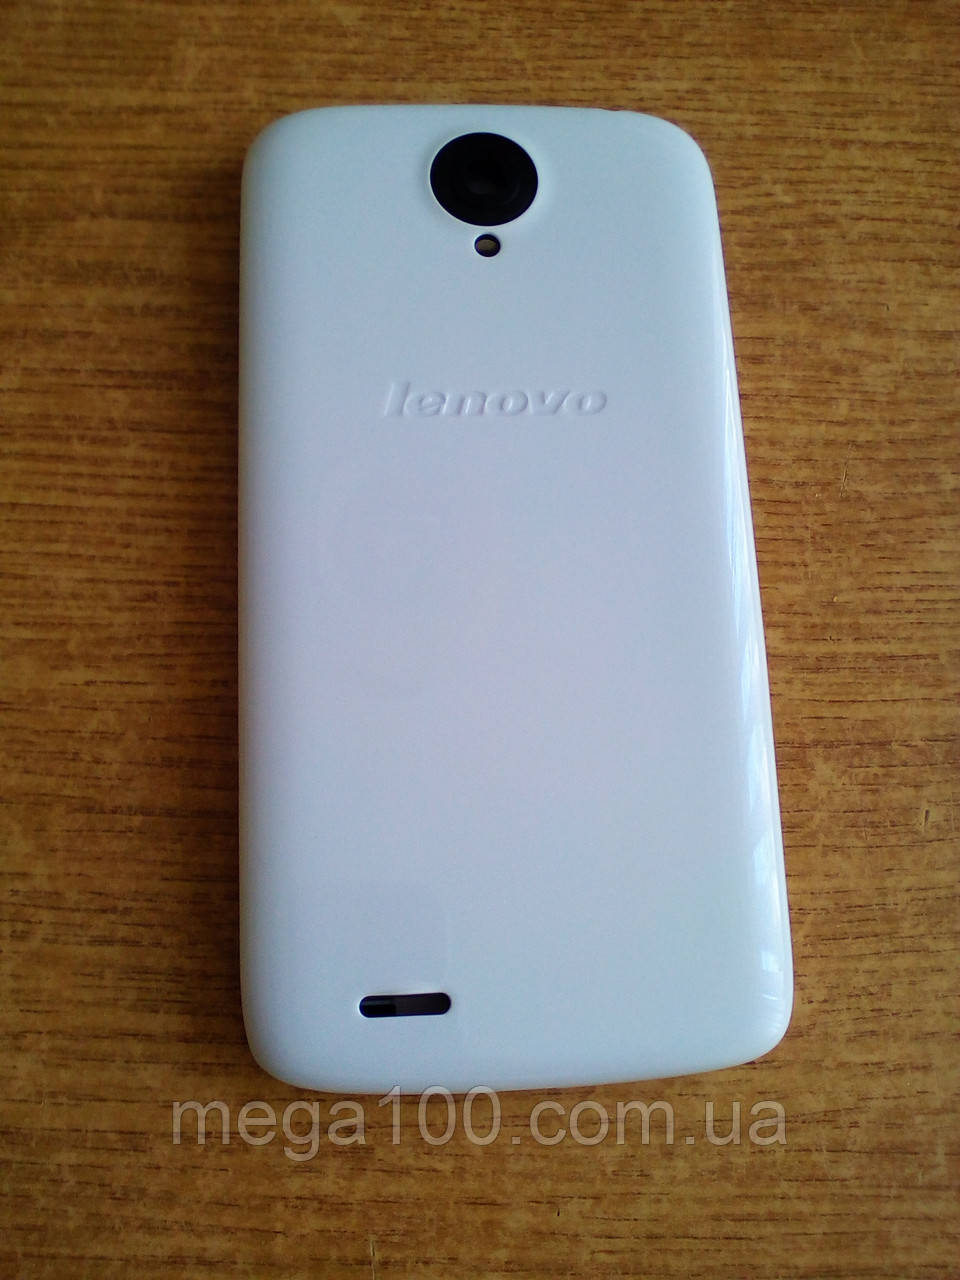 Корпус смартфону Lenovo S820 білий колір